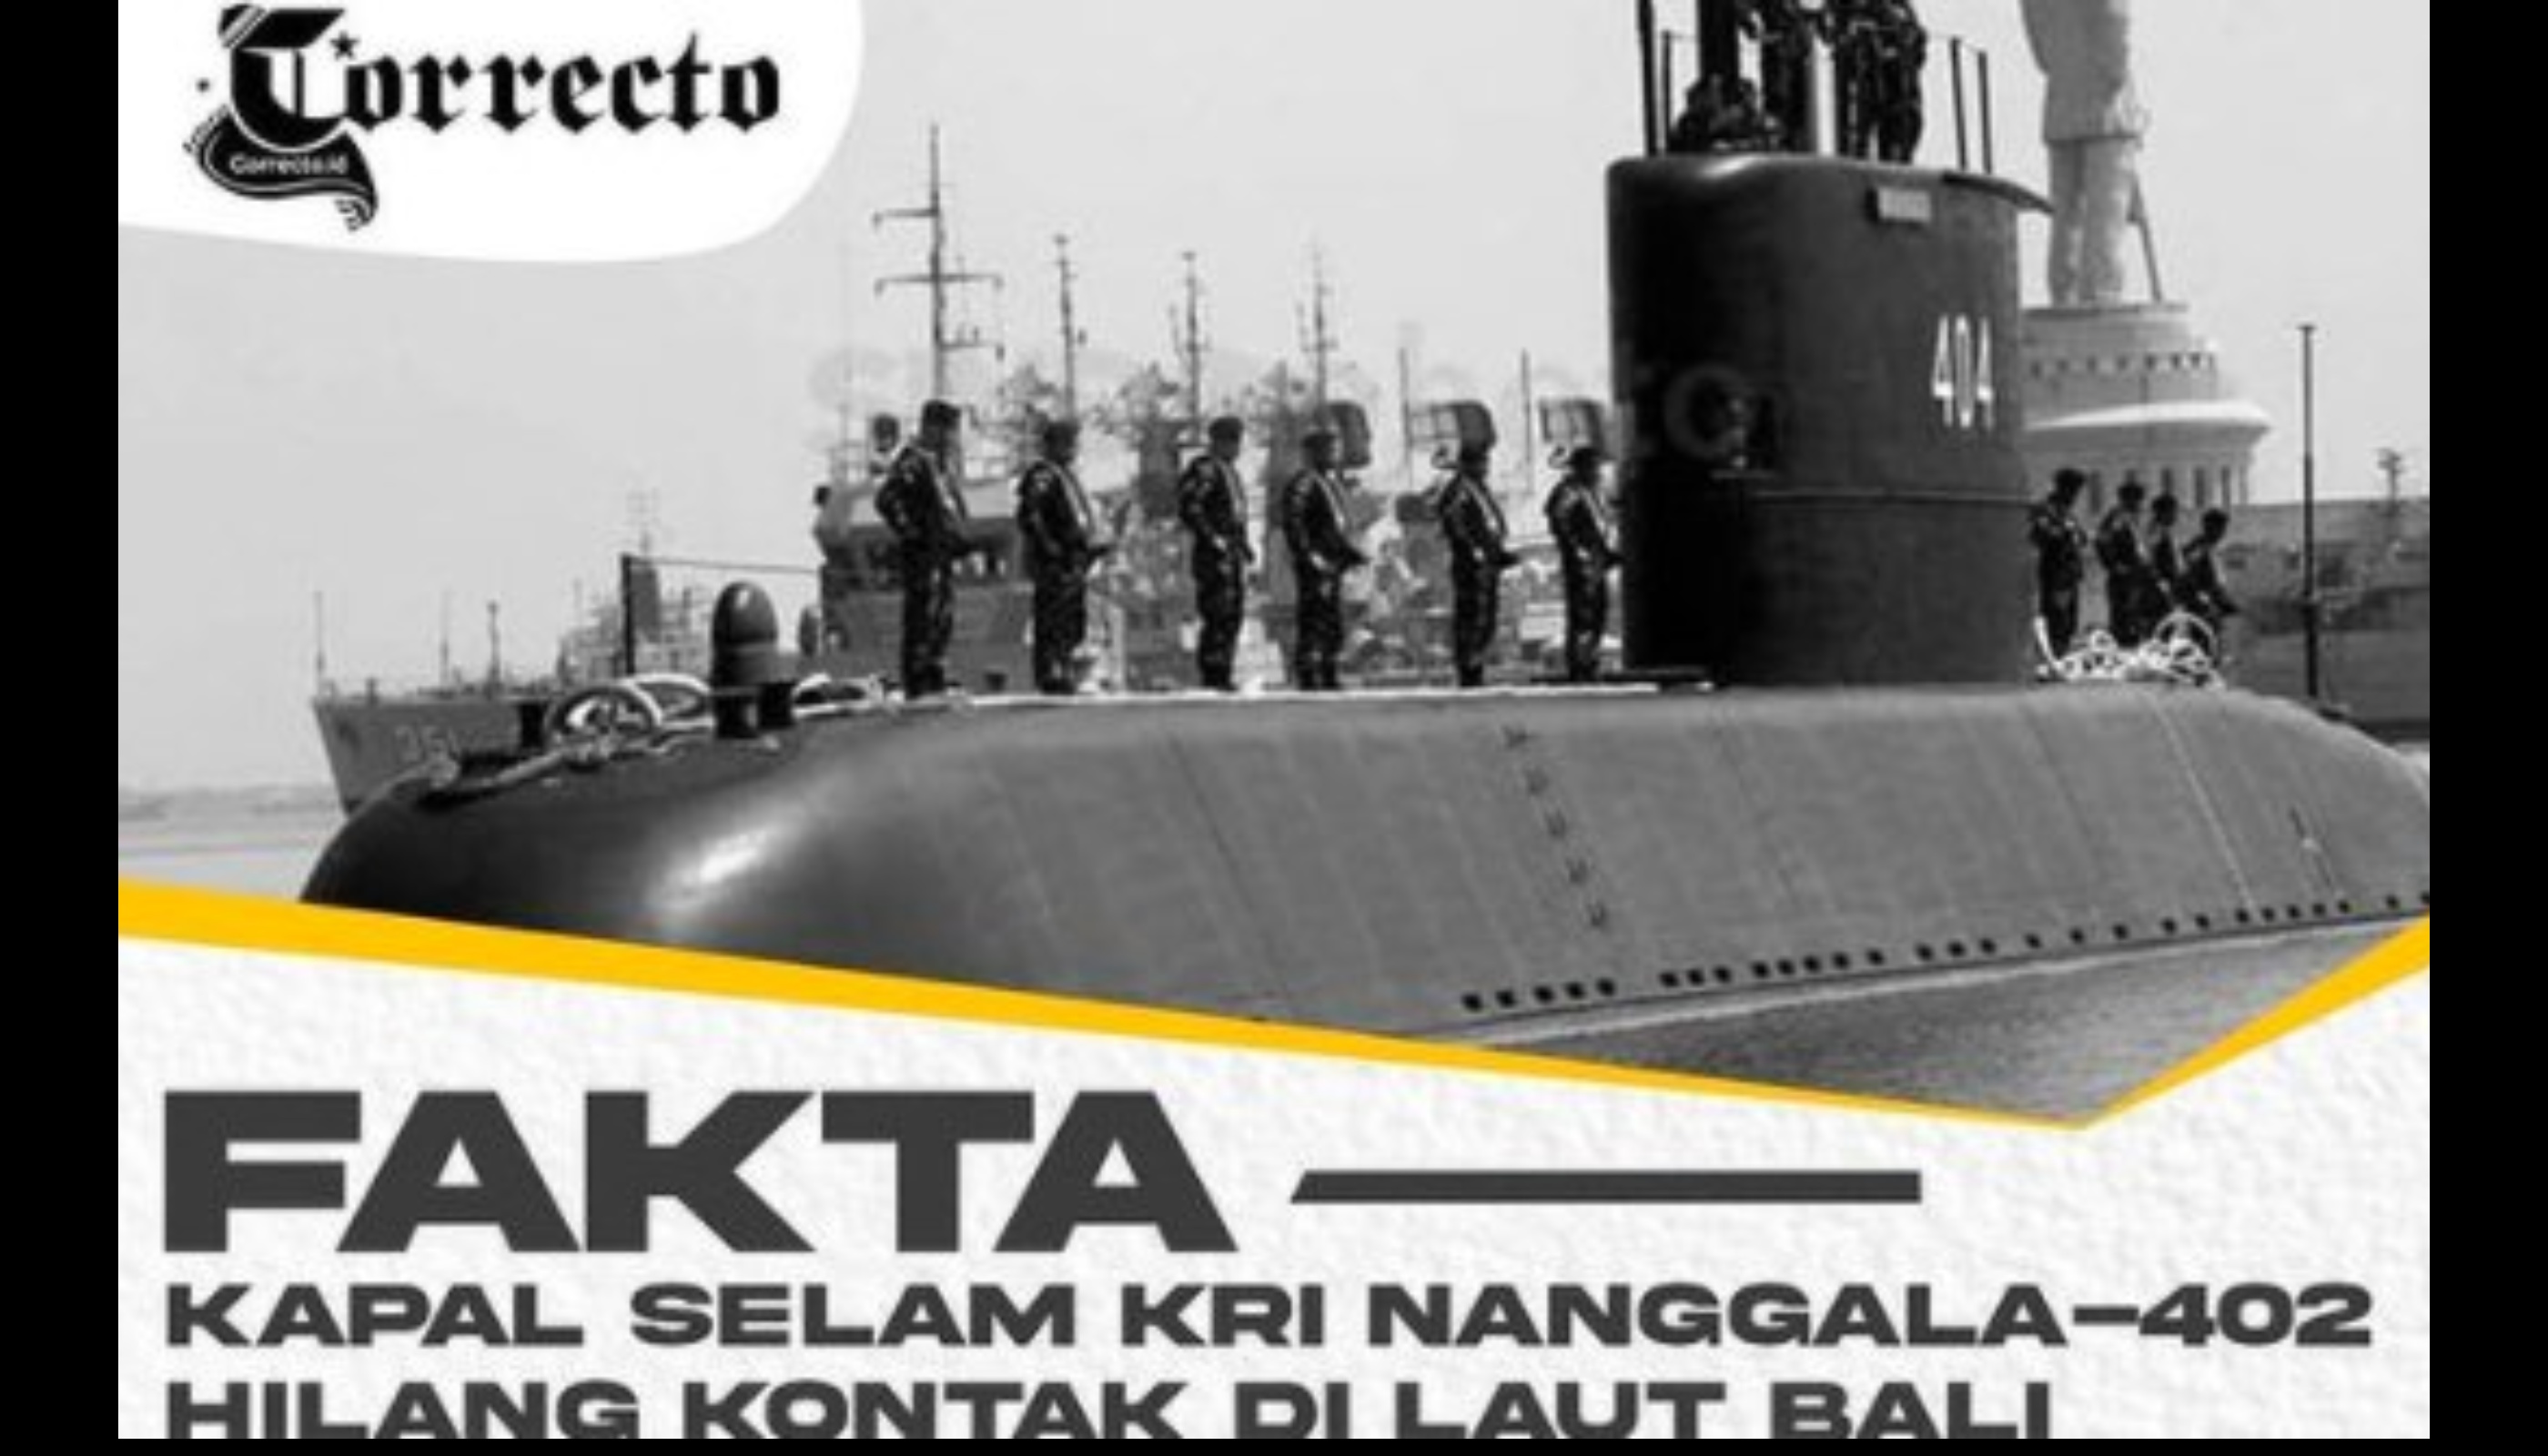 Fakta-fakta Kapal Selam TNI KRI Nanggala-402 yang Hilang di Laut Bali